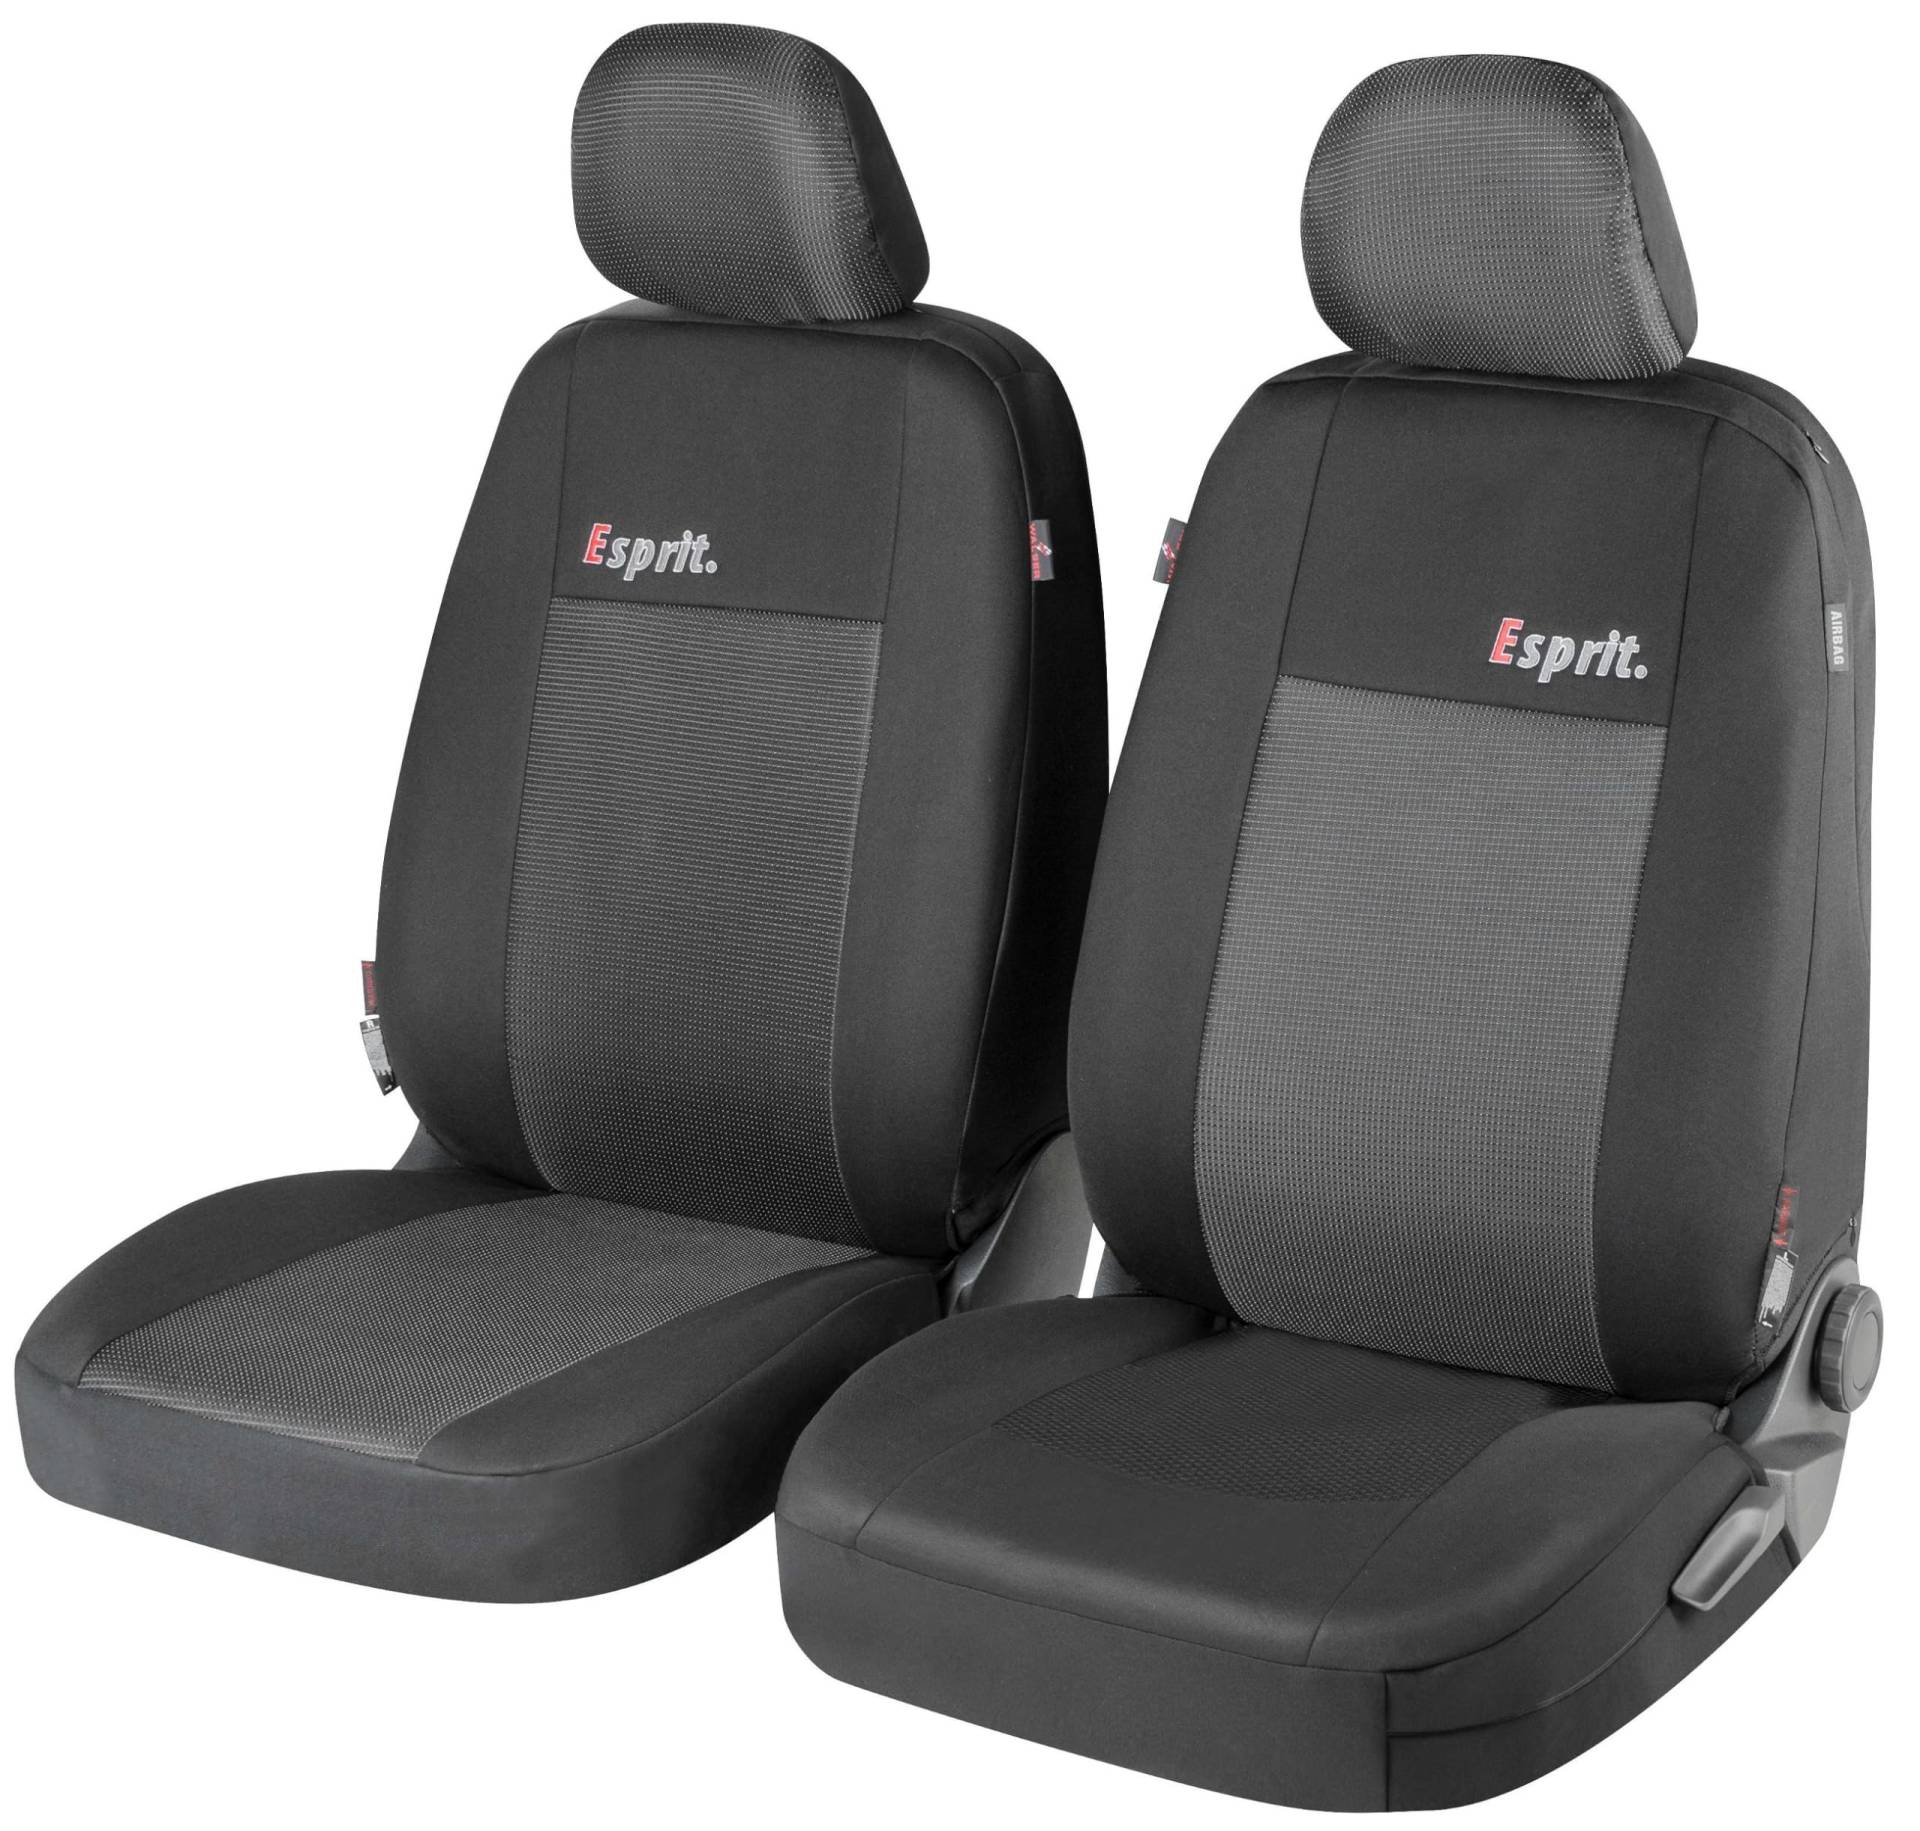 Walser Auto Sitzbezug Esprit mit Reißverschluss, Zipp-IT Schonbezüge für Normalsitze, 2 Vordersitzbezüge schwarz/grau 11848 von Walser